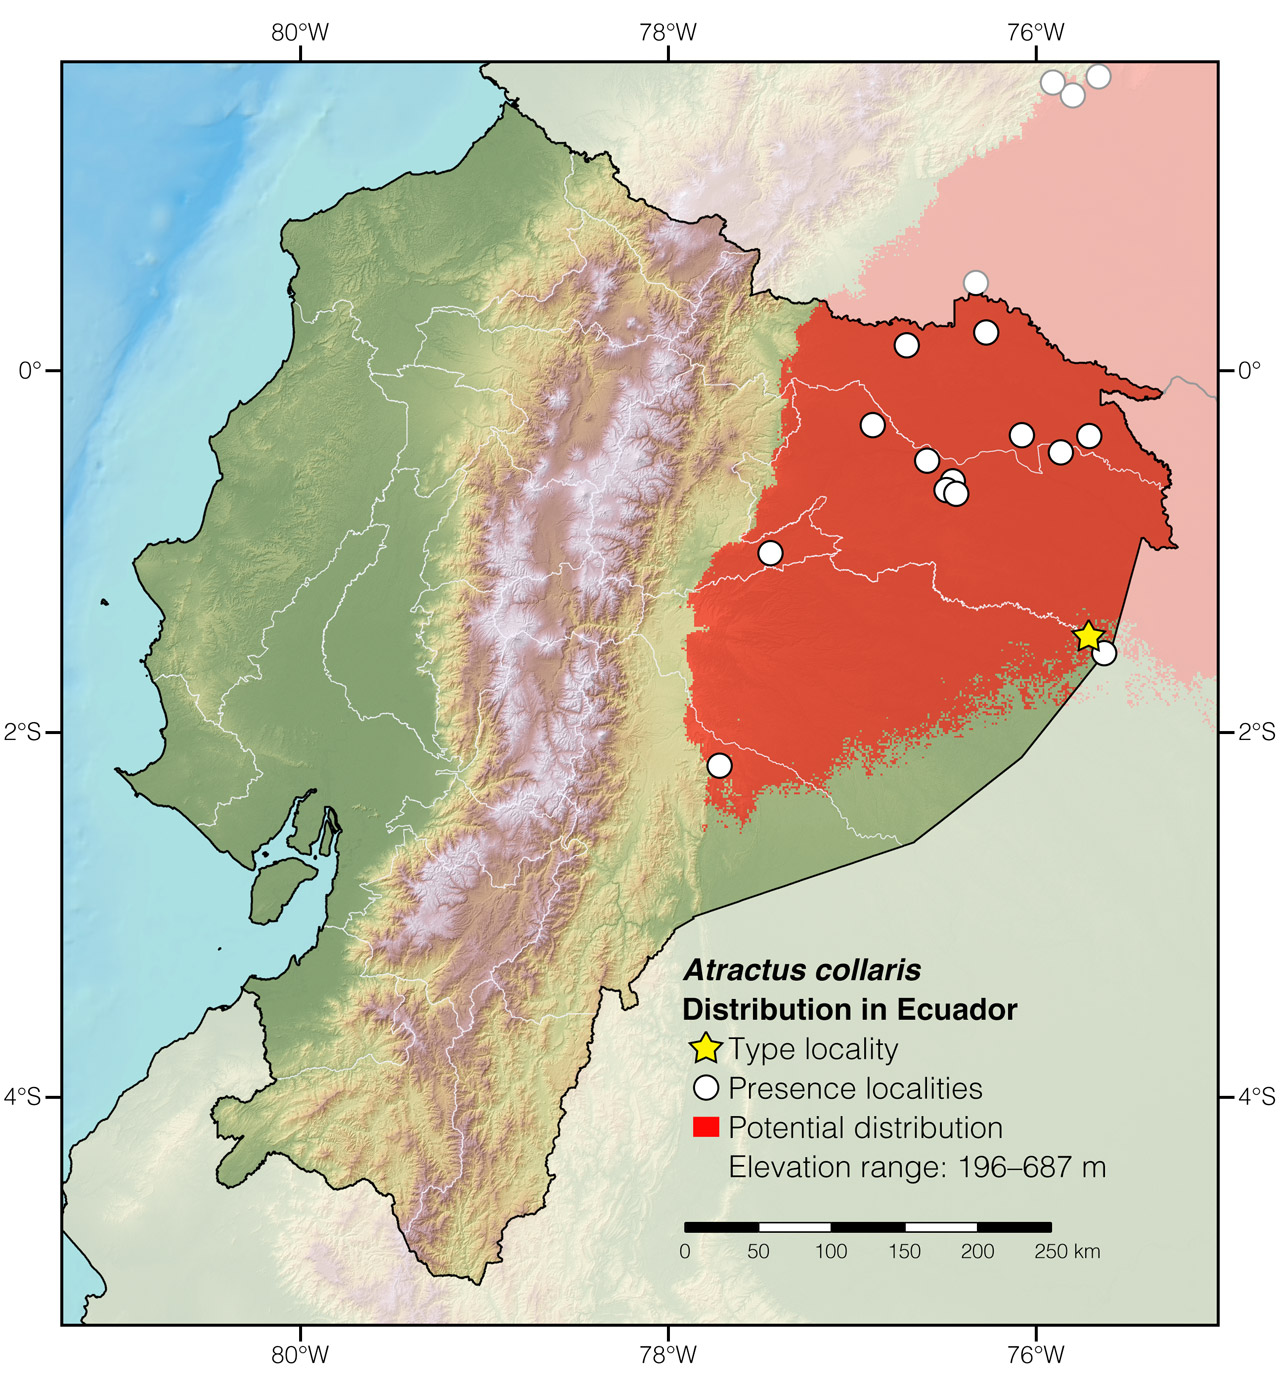 Distribution of Atractus collaris in Ecuador